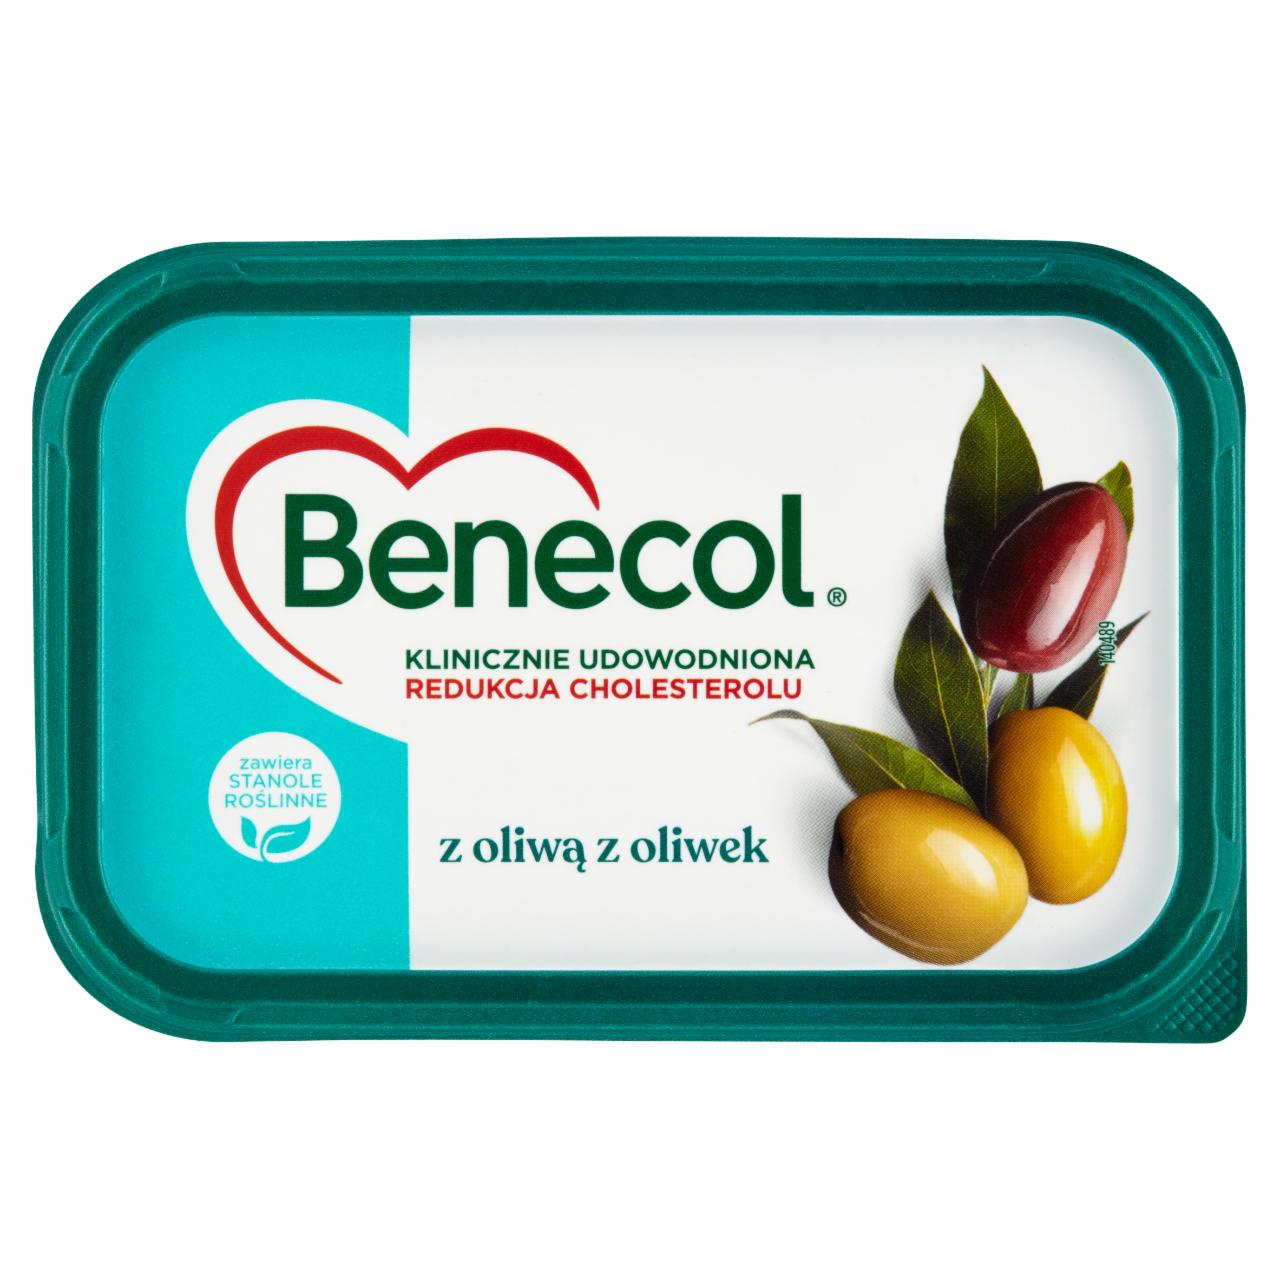 Zdjęcia - Benecol Tłuszcz do smarowania z dodatkiem stanoli roślinnych z oliwą z oliwek 400 g